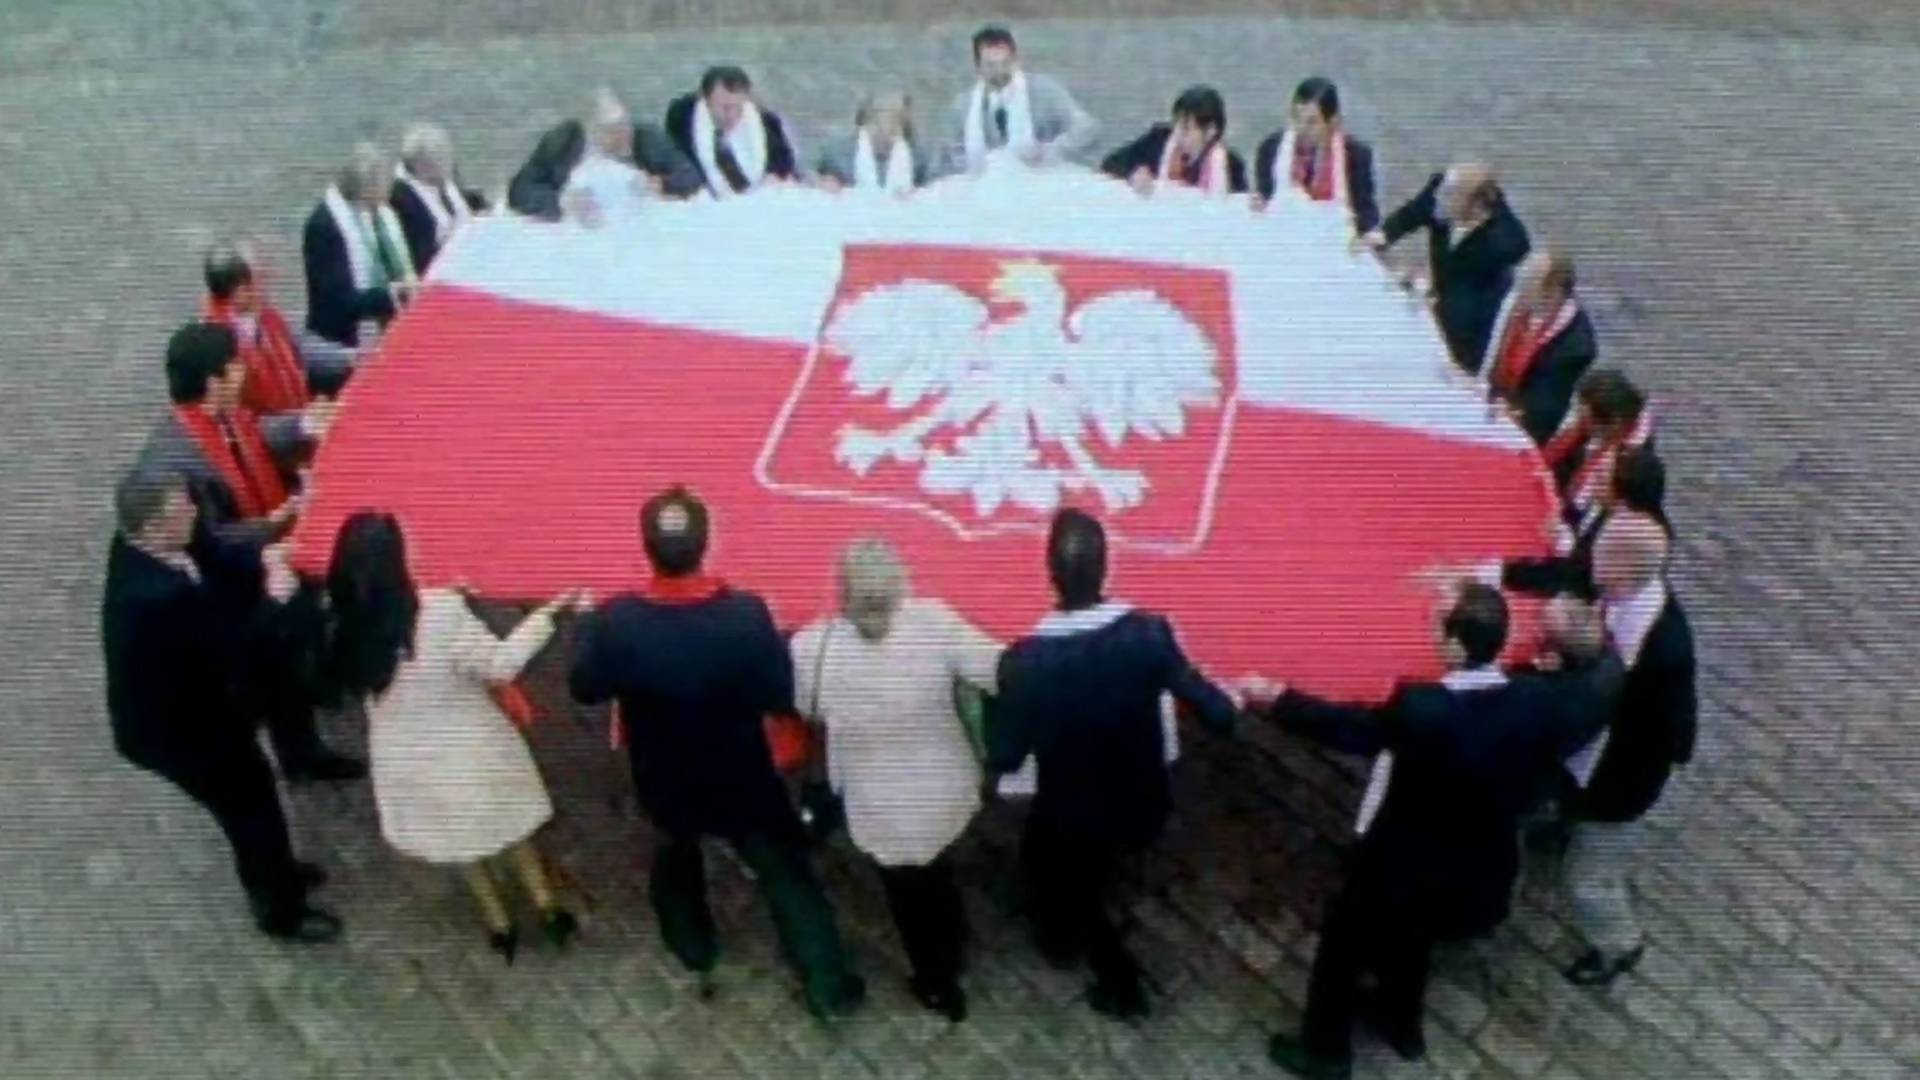 W Polsce nienawidzą się wszyscy, tylko niektórzy to świetnie ukrywają